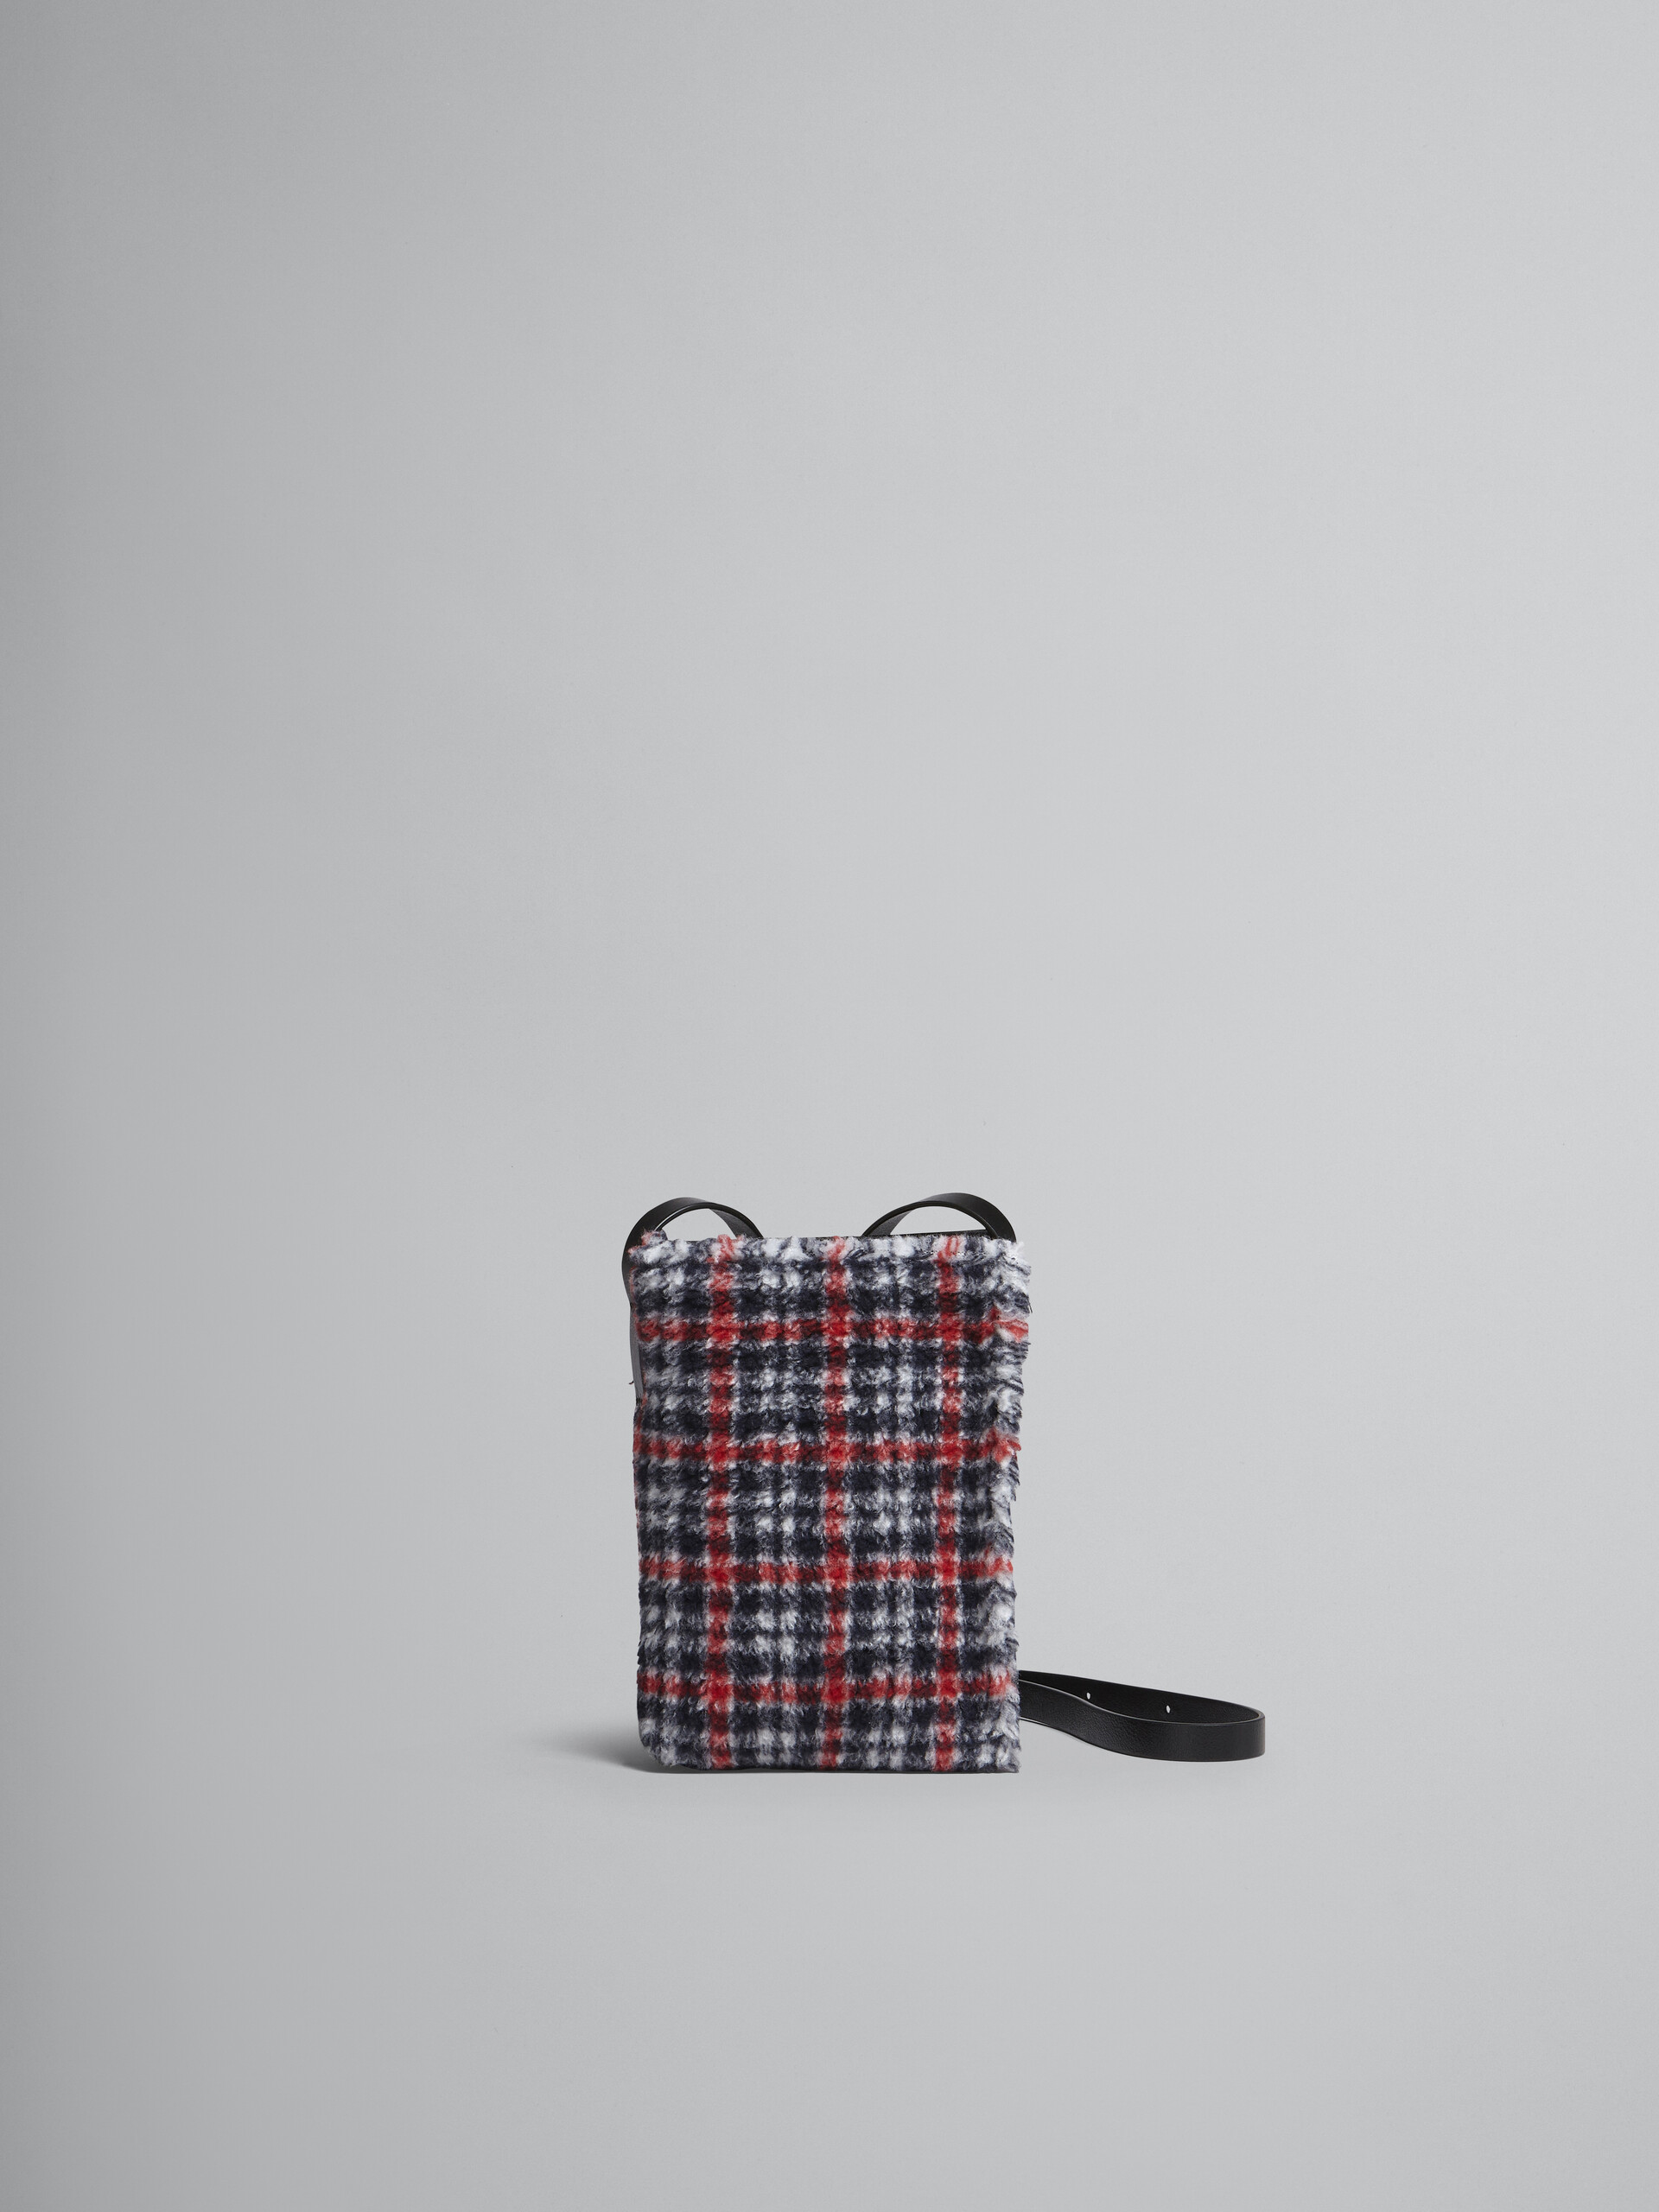 MUSEO SOFT bag piccola in tessuto check rosso - Borse a spalla - Image 1